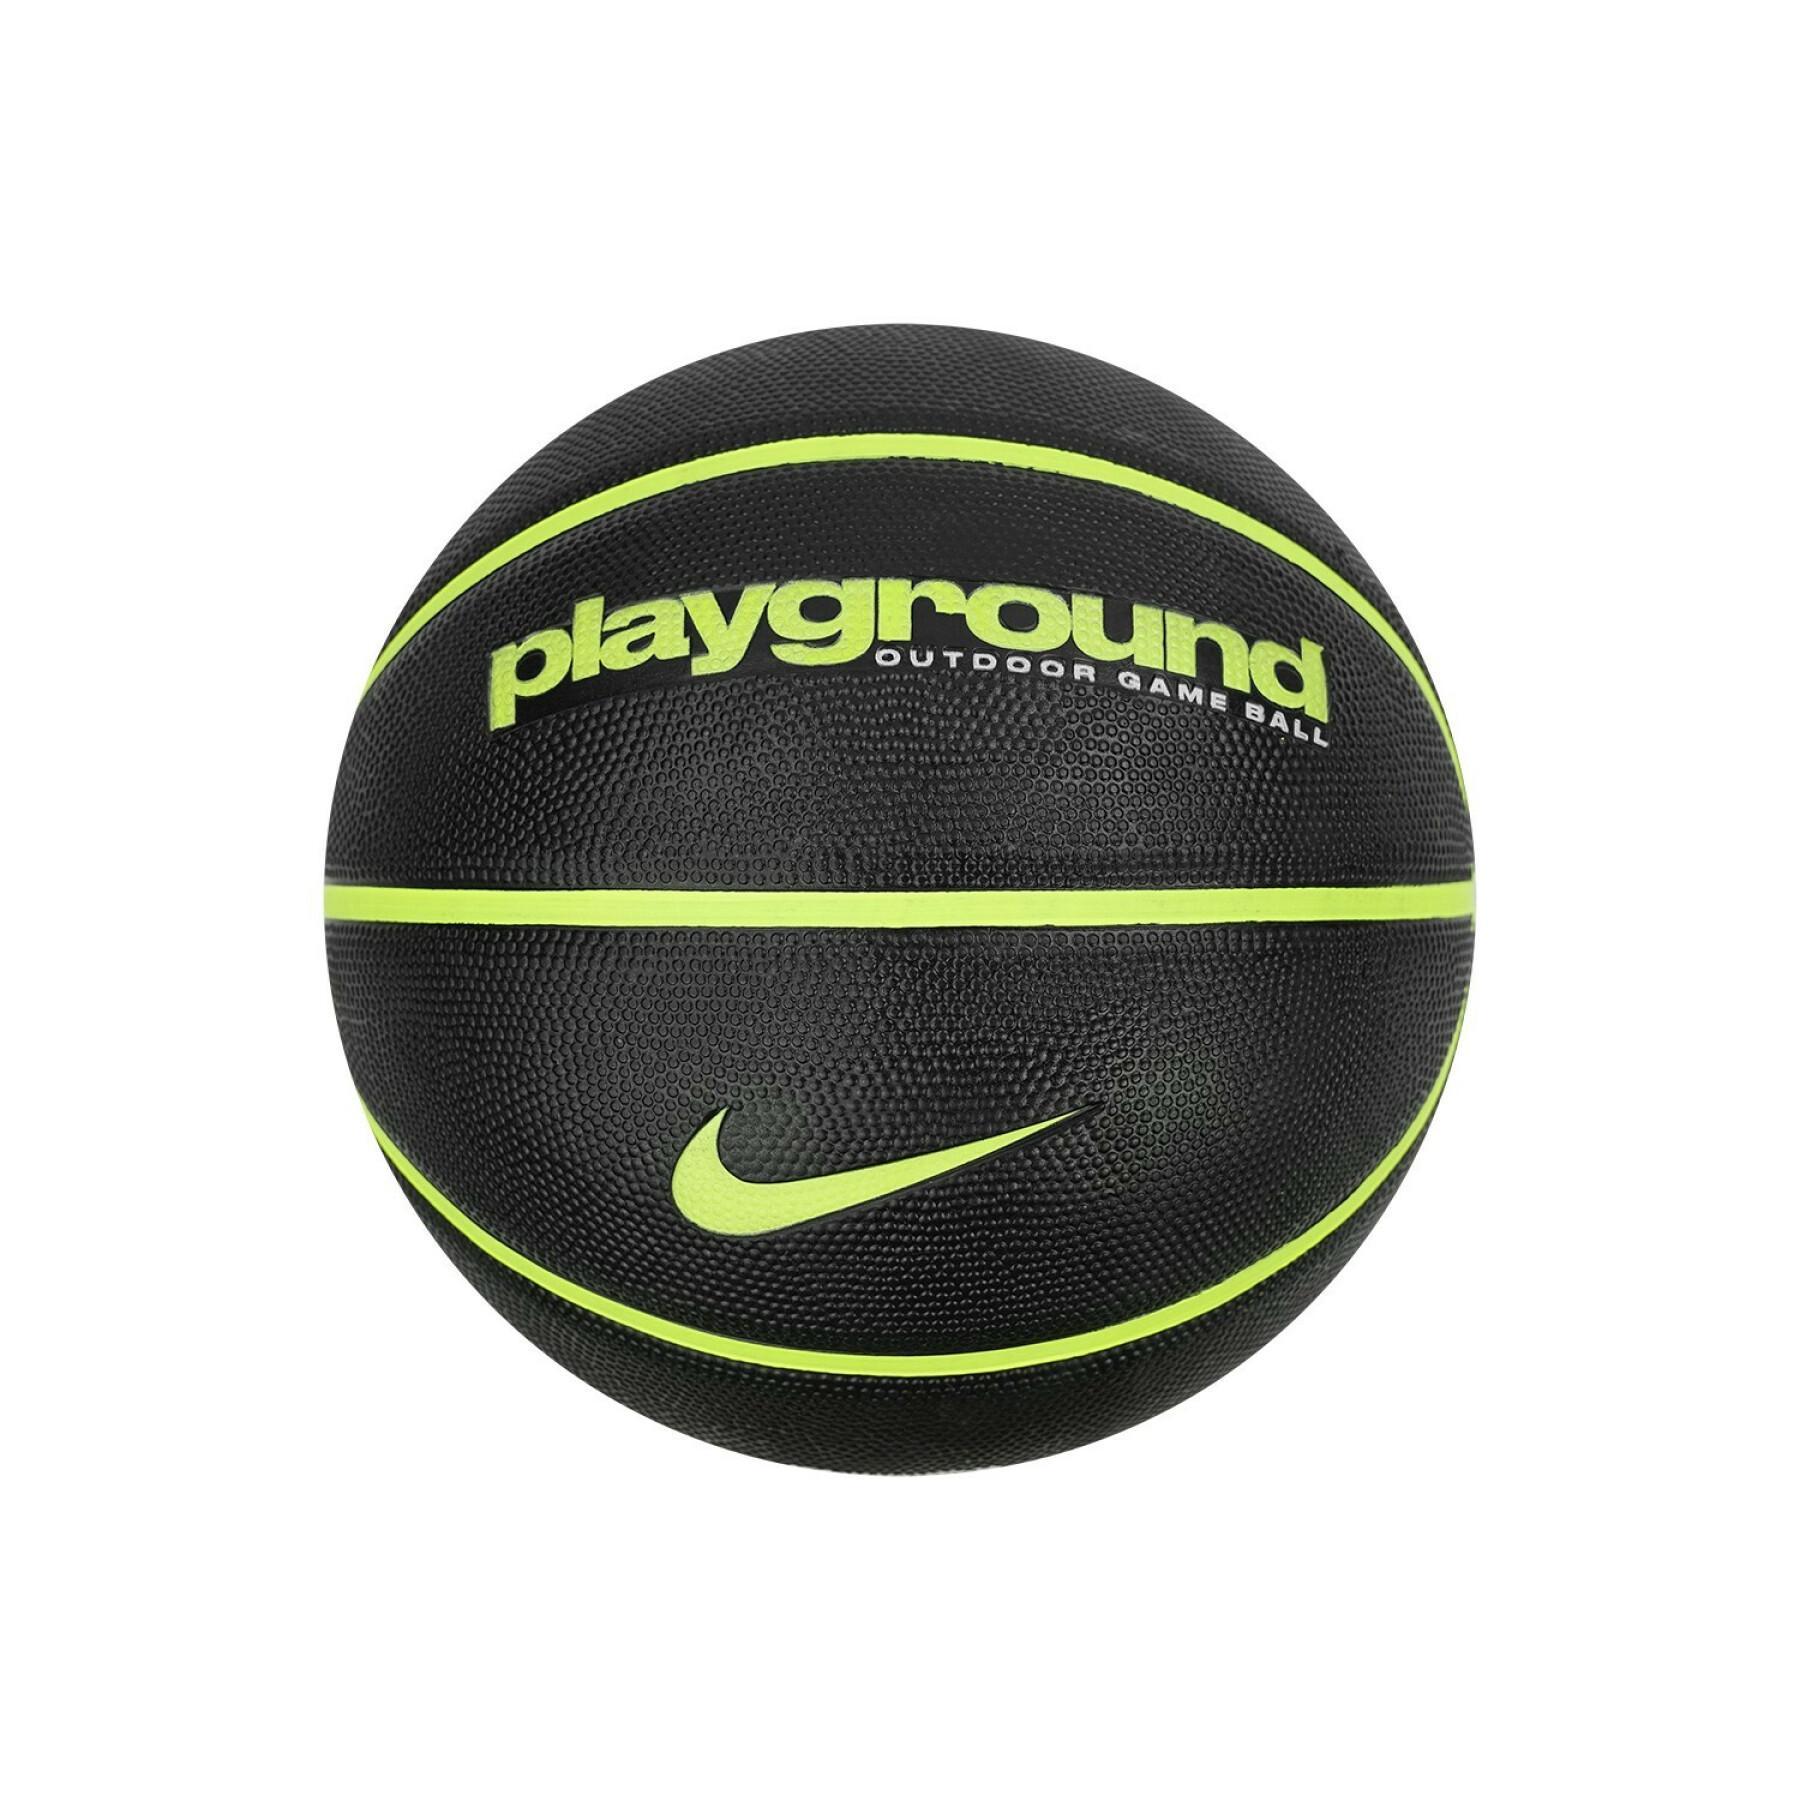 Piłka do koszykówki Nike Everyday Playground 8P Deflated